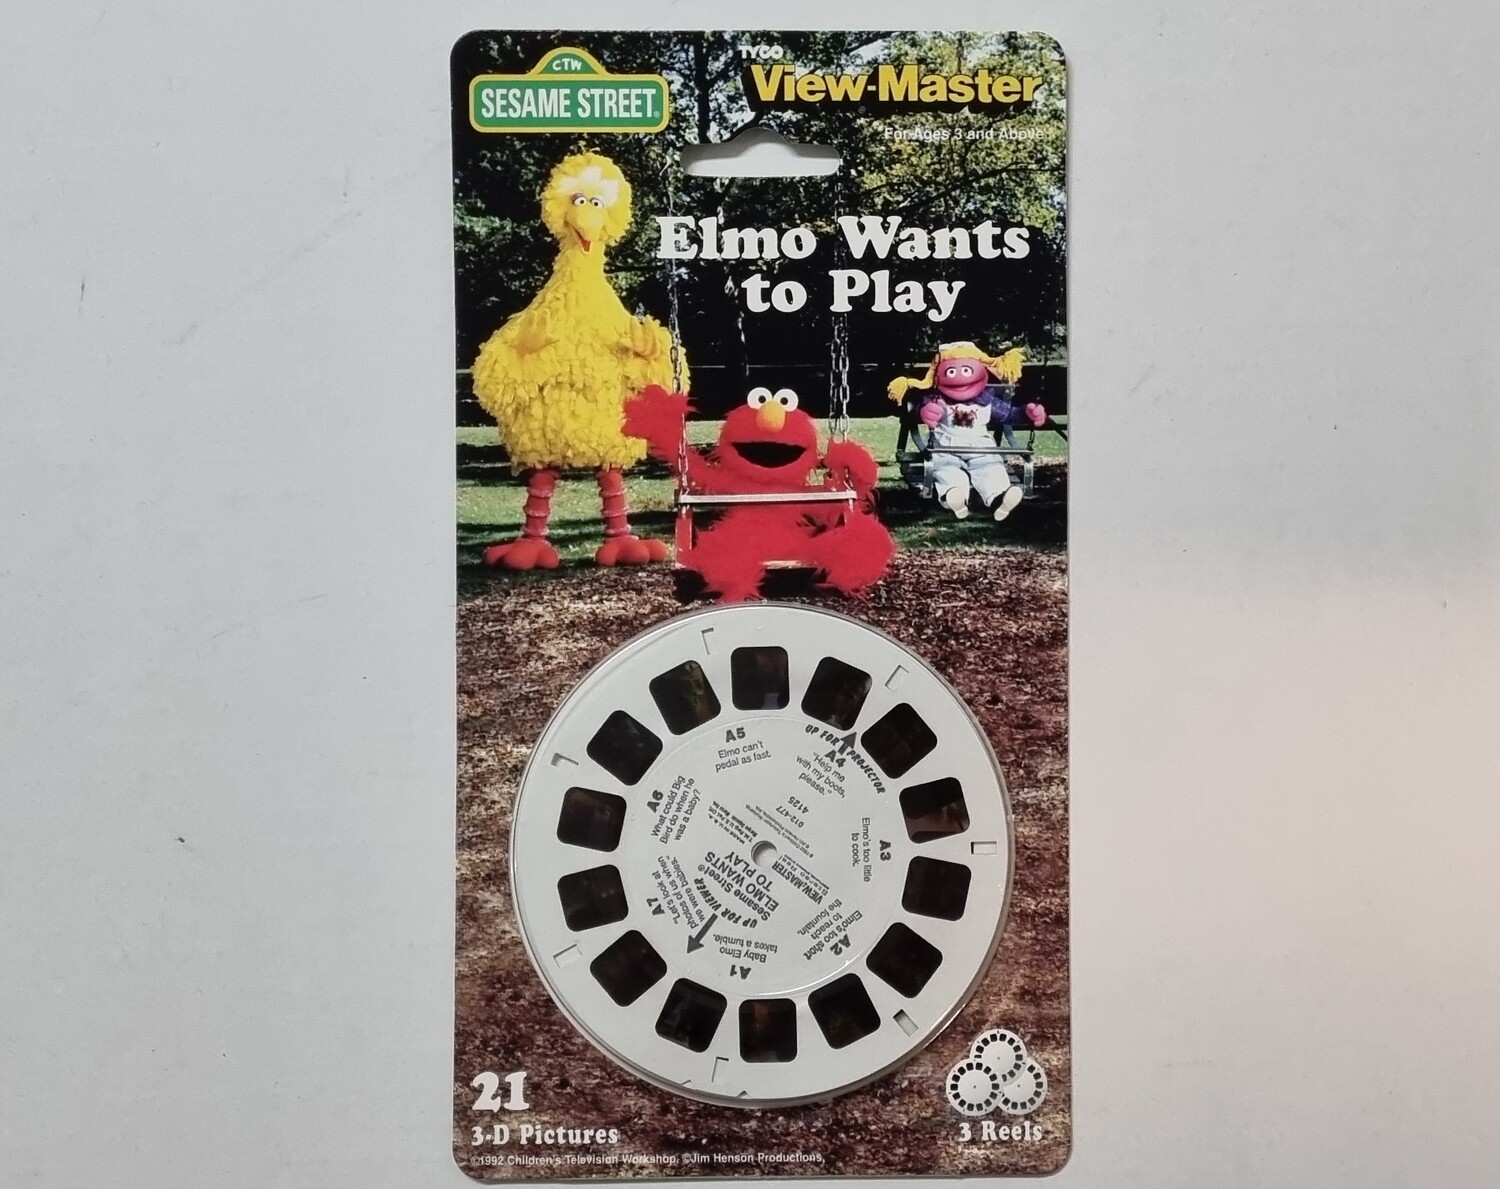 Viewmaster, Elmo Wants to play, 3 Reels, 21 3D afbeeldingen, Sesamstraat